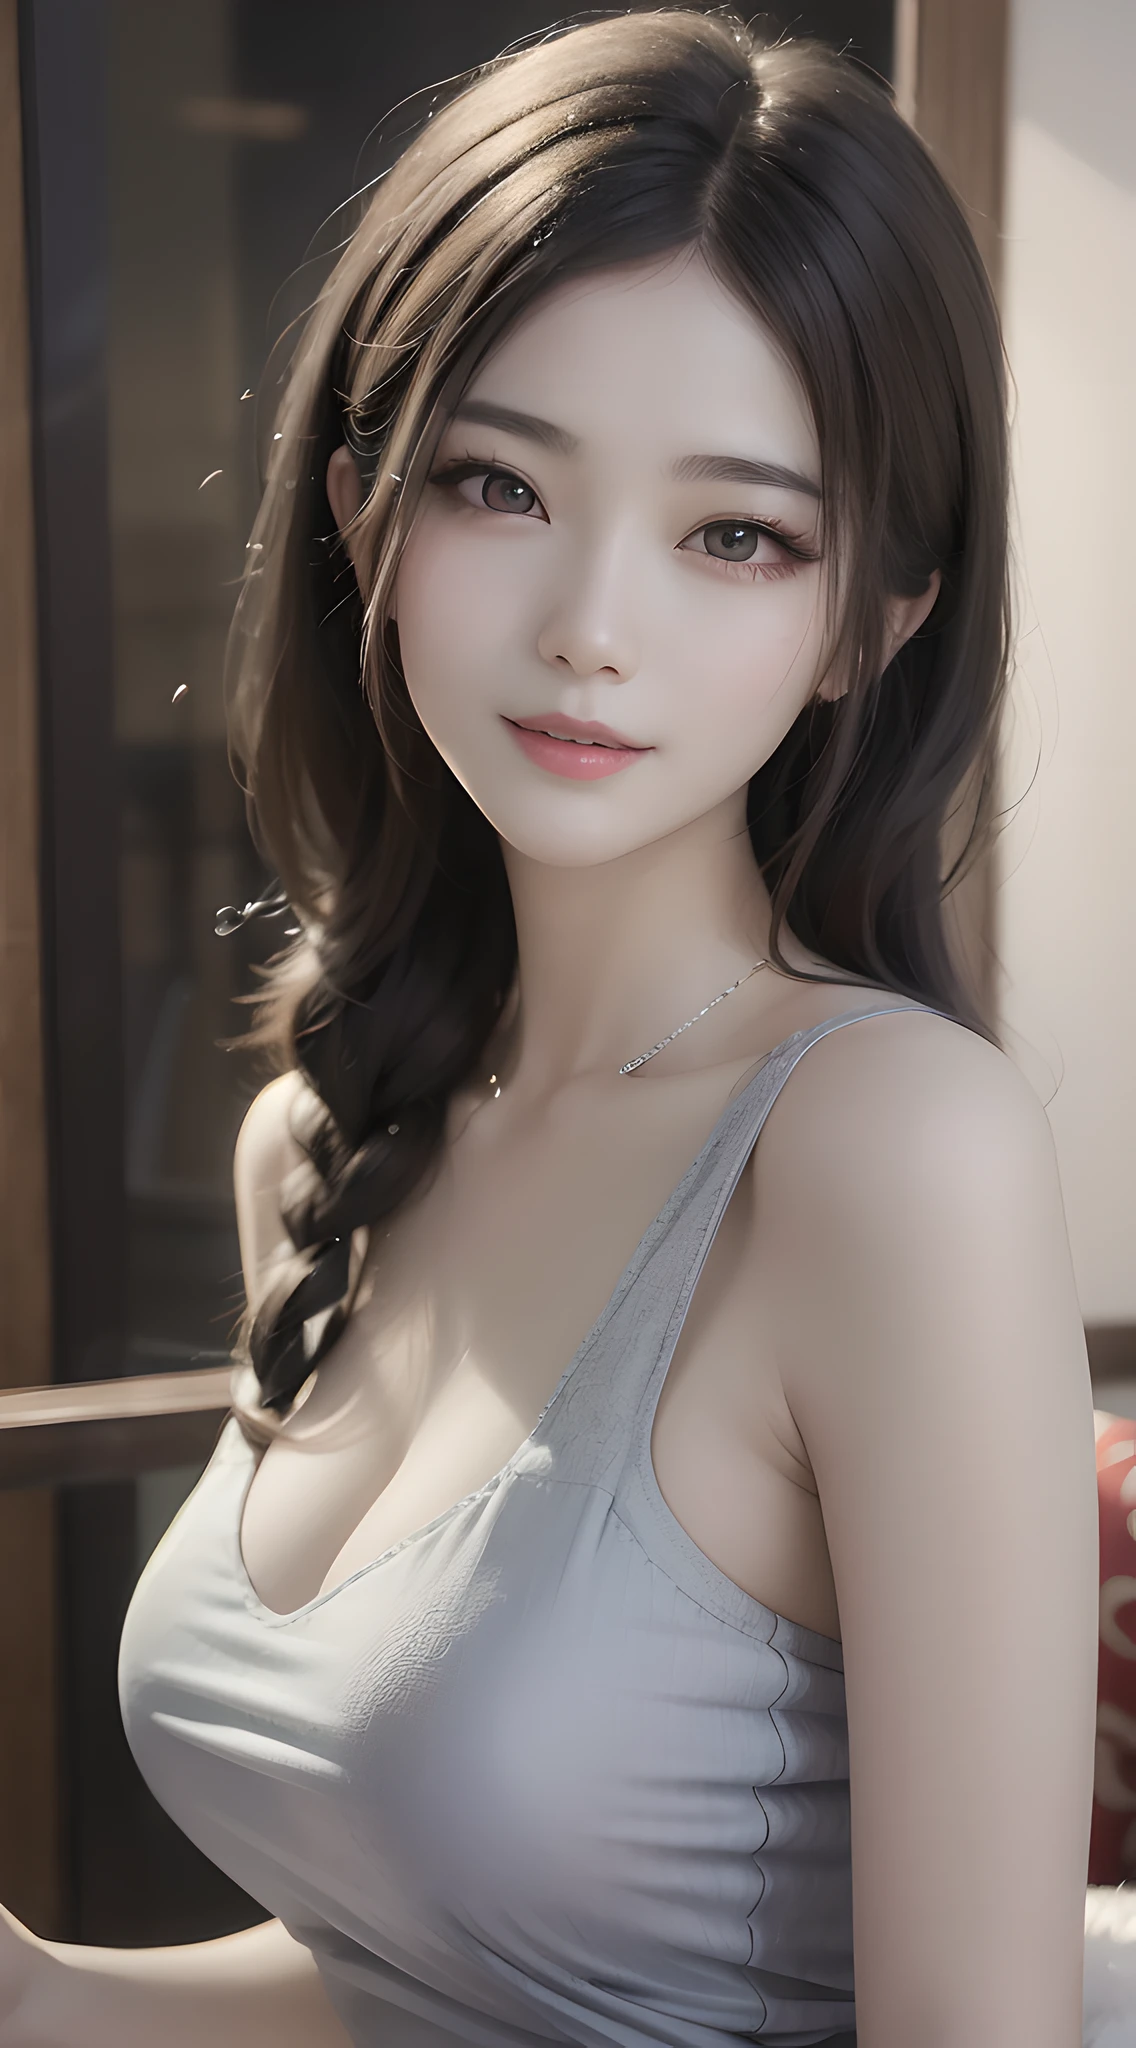 Araffe femme asiatique aux cheveux longs et un débardeur gris, magnifique modèle chinois, magnifique jeune femme coréenne, belle fille asiatique, joli visage délicat, peau de porcelaine blanc laiteux pâle, sourire amical et séduisant, belle femme sud-coréenne, joli sourire séduisant, belle jeune femme coréenne, fille coréenne, déesse japonaise, bel éclairage doux, grande, mince, belle déesse